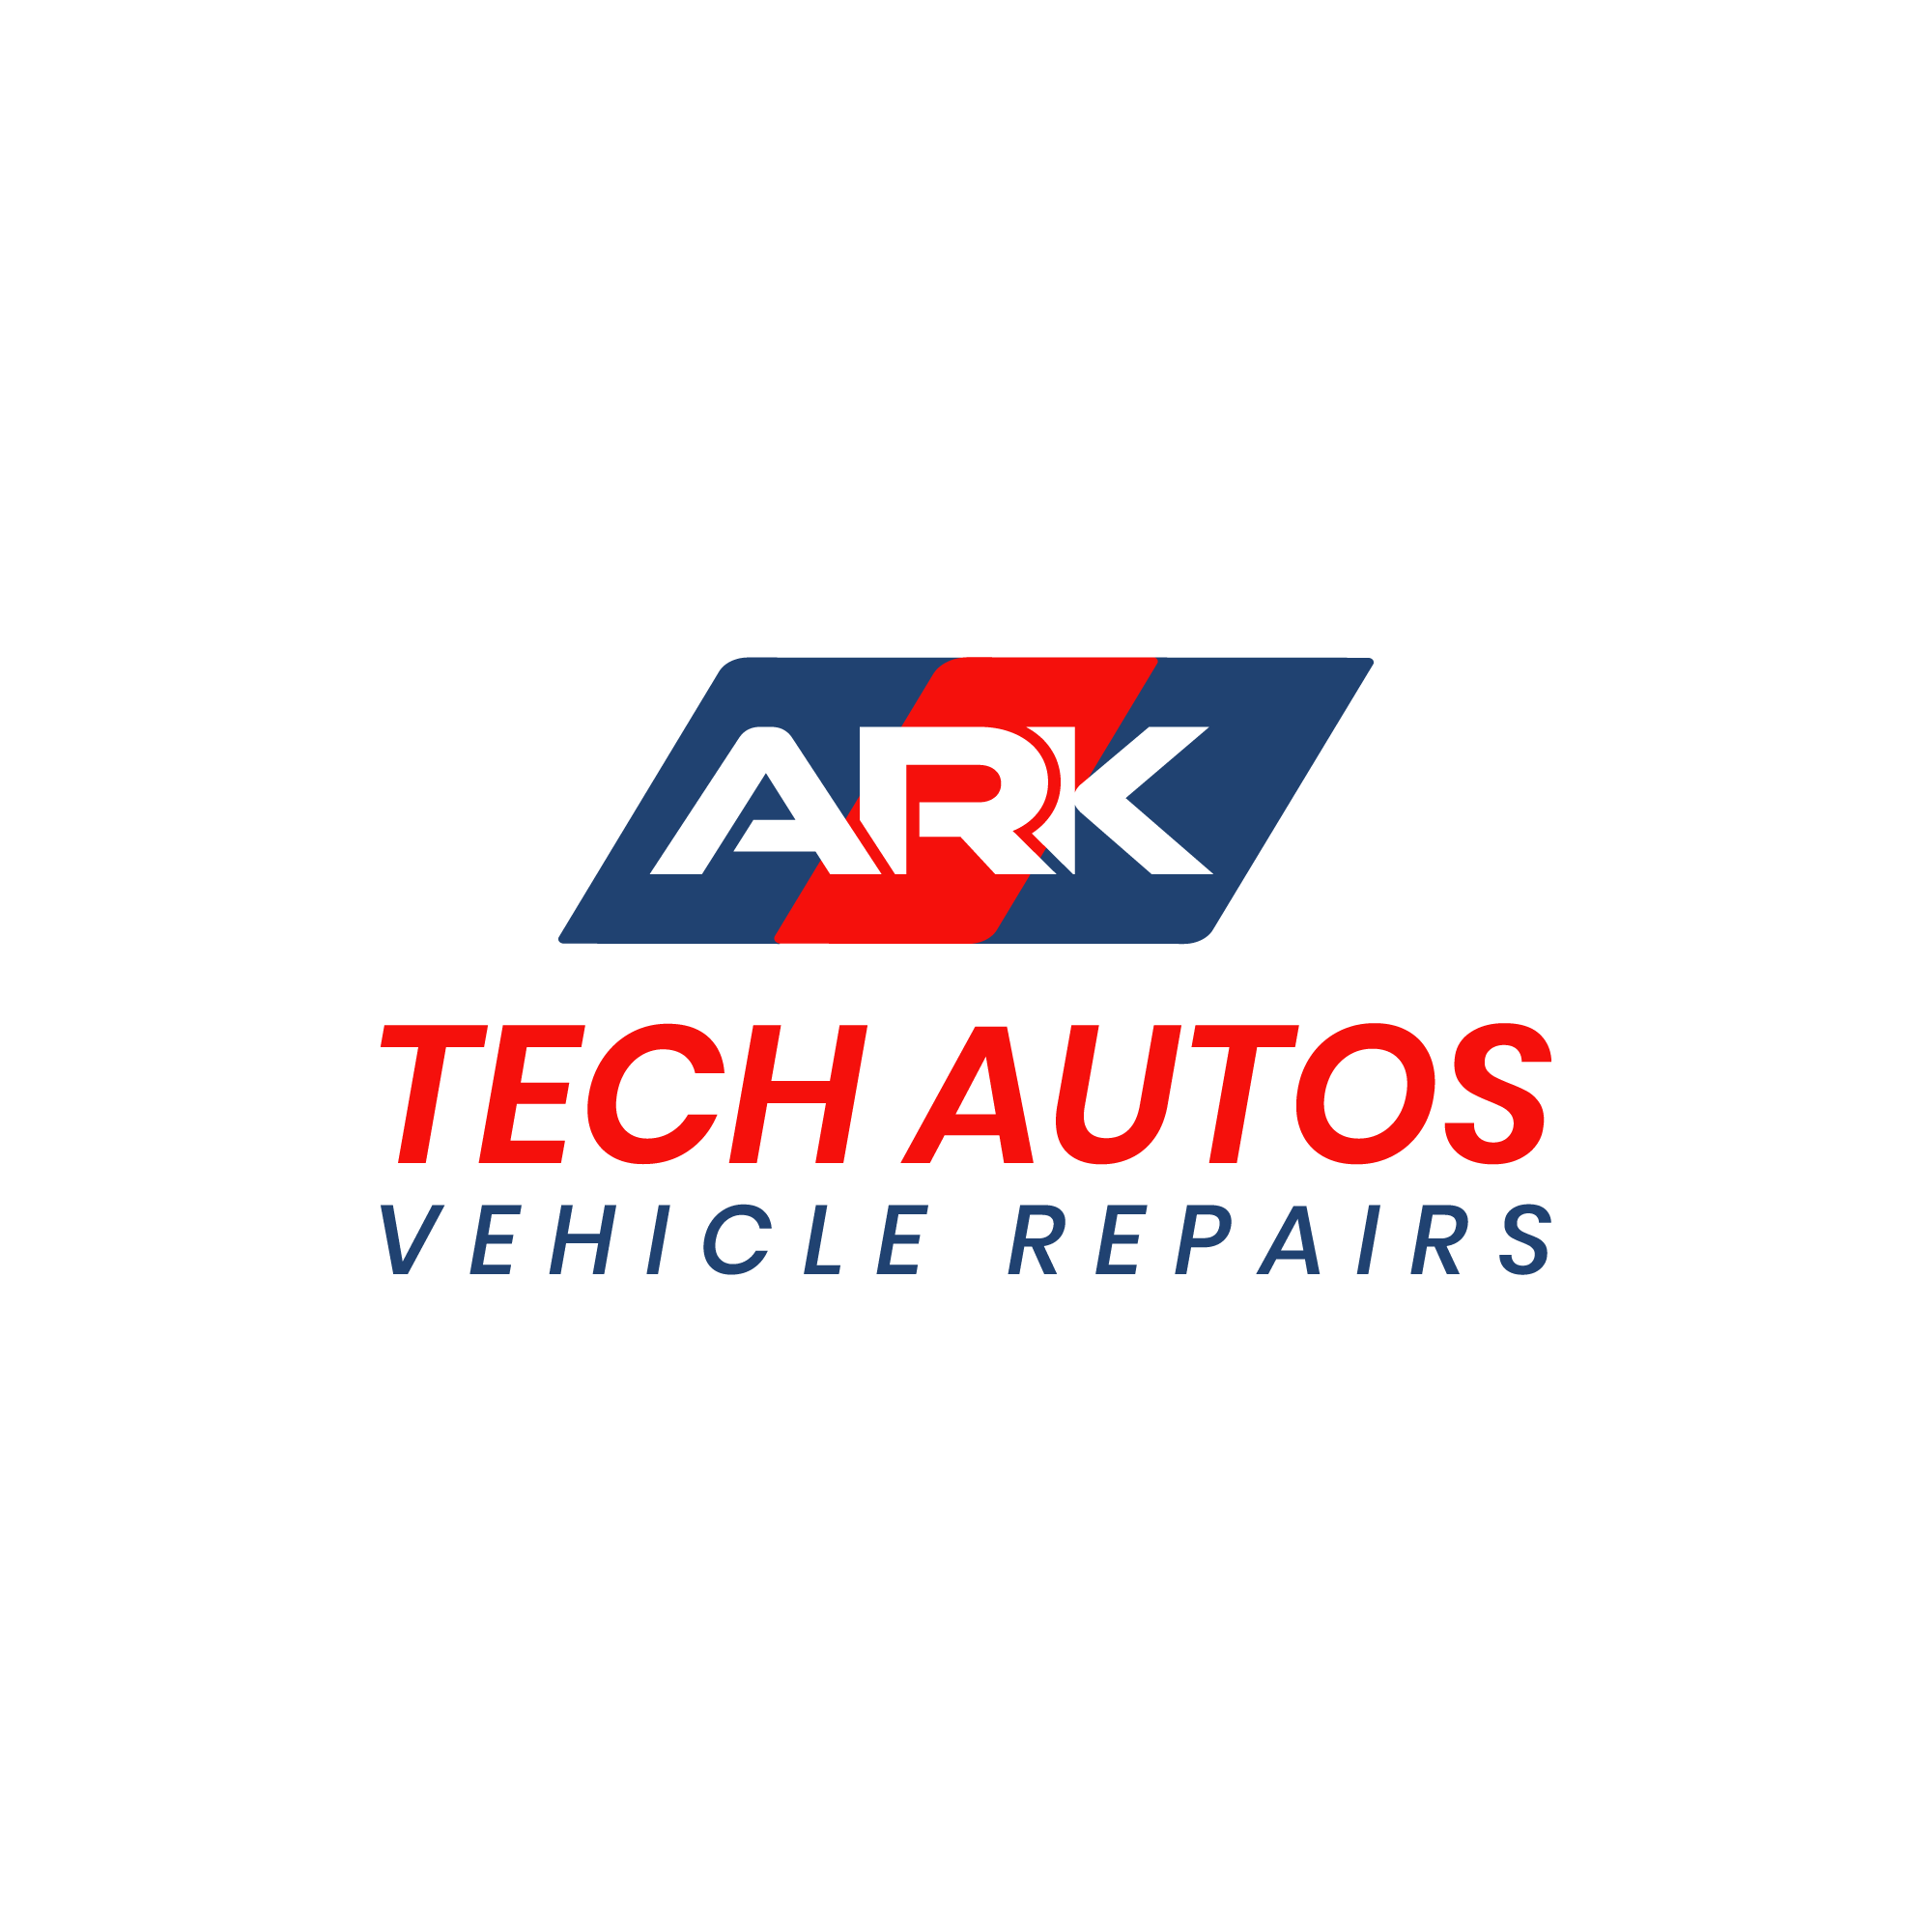 Ark Tech Autos logo